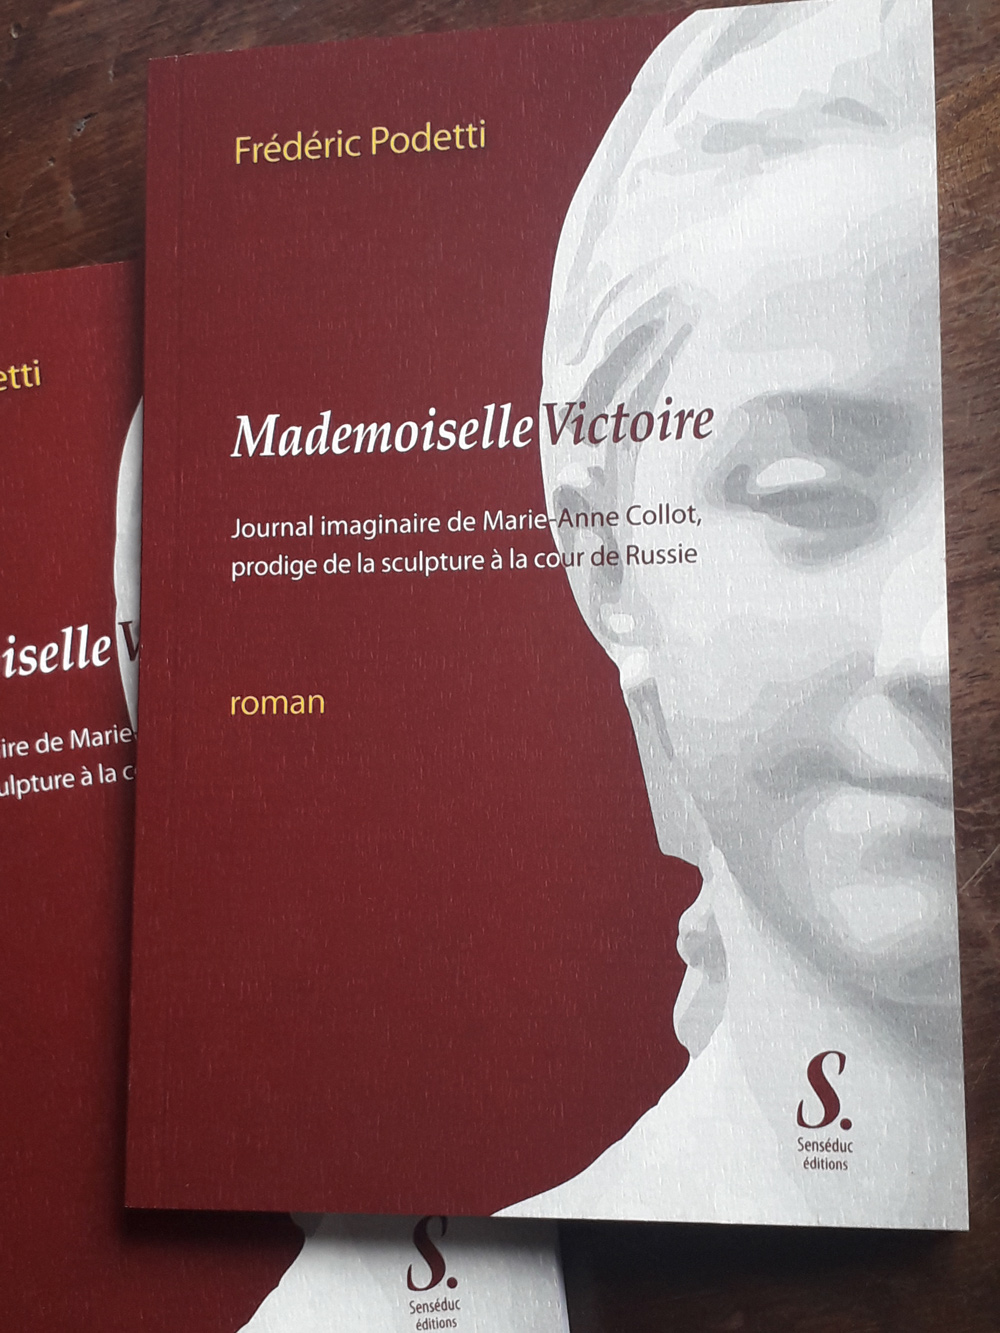 mademoiselle victoire roman de frederic podetti senseduc edition